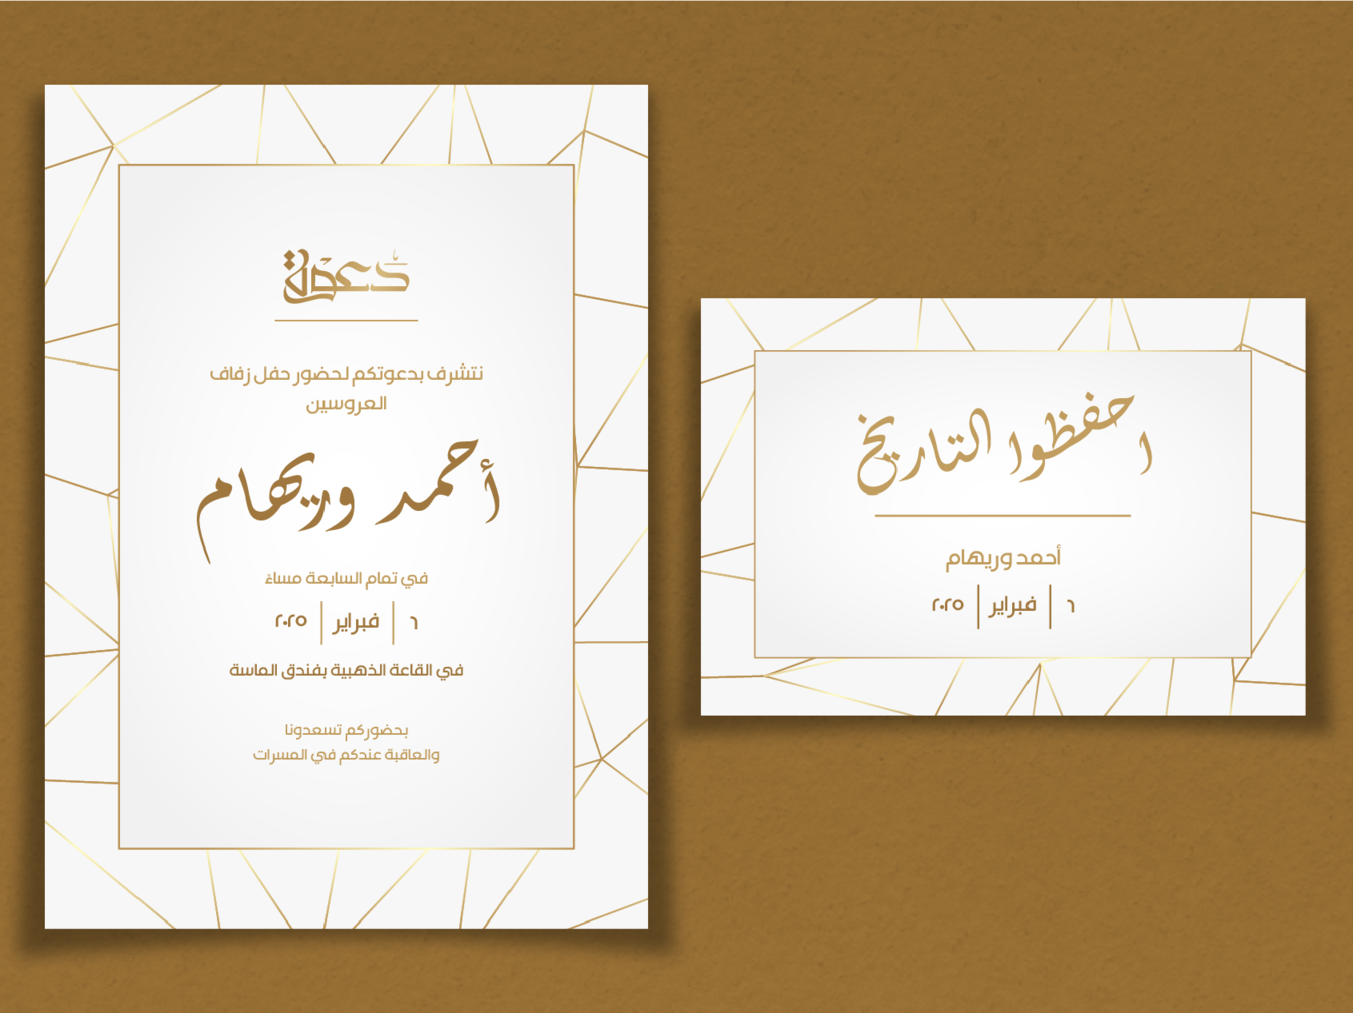 دعوة زفاف تصميم عصري مع نمط ذهبي-Wedding card - MW-Takareer